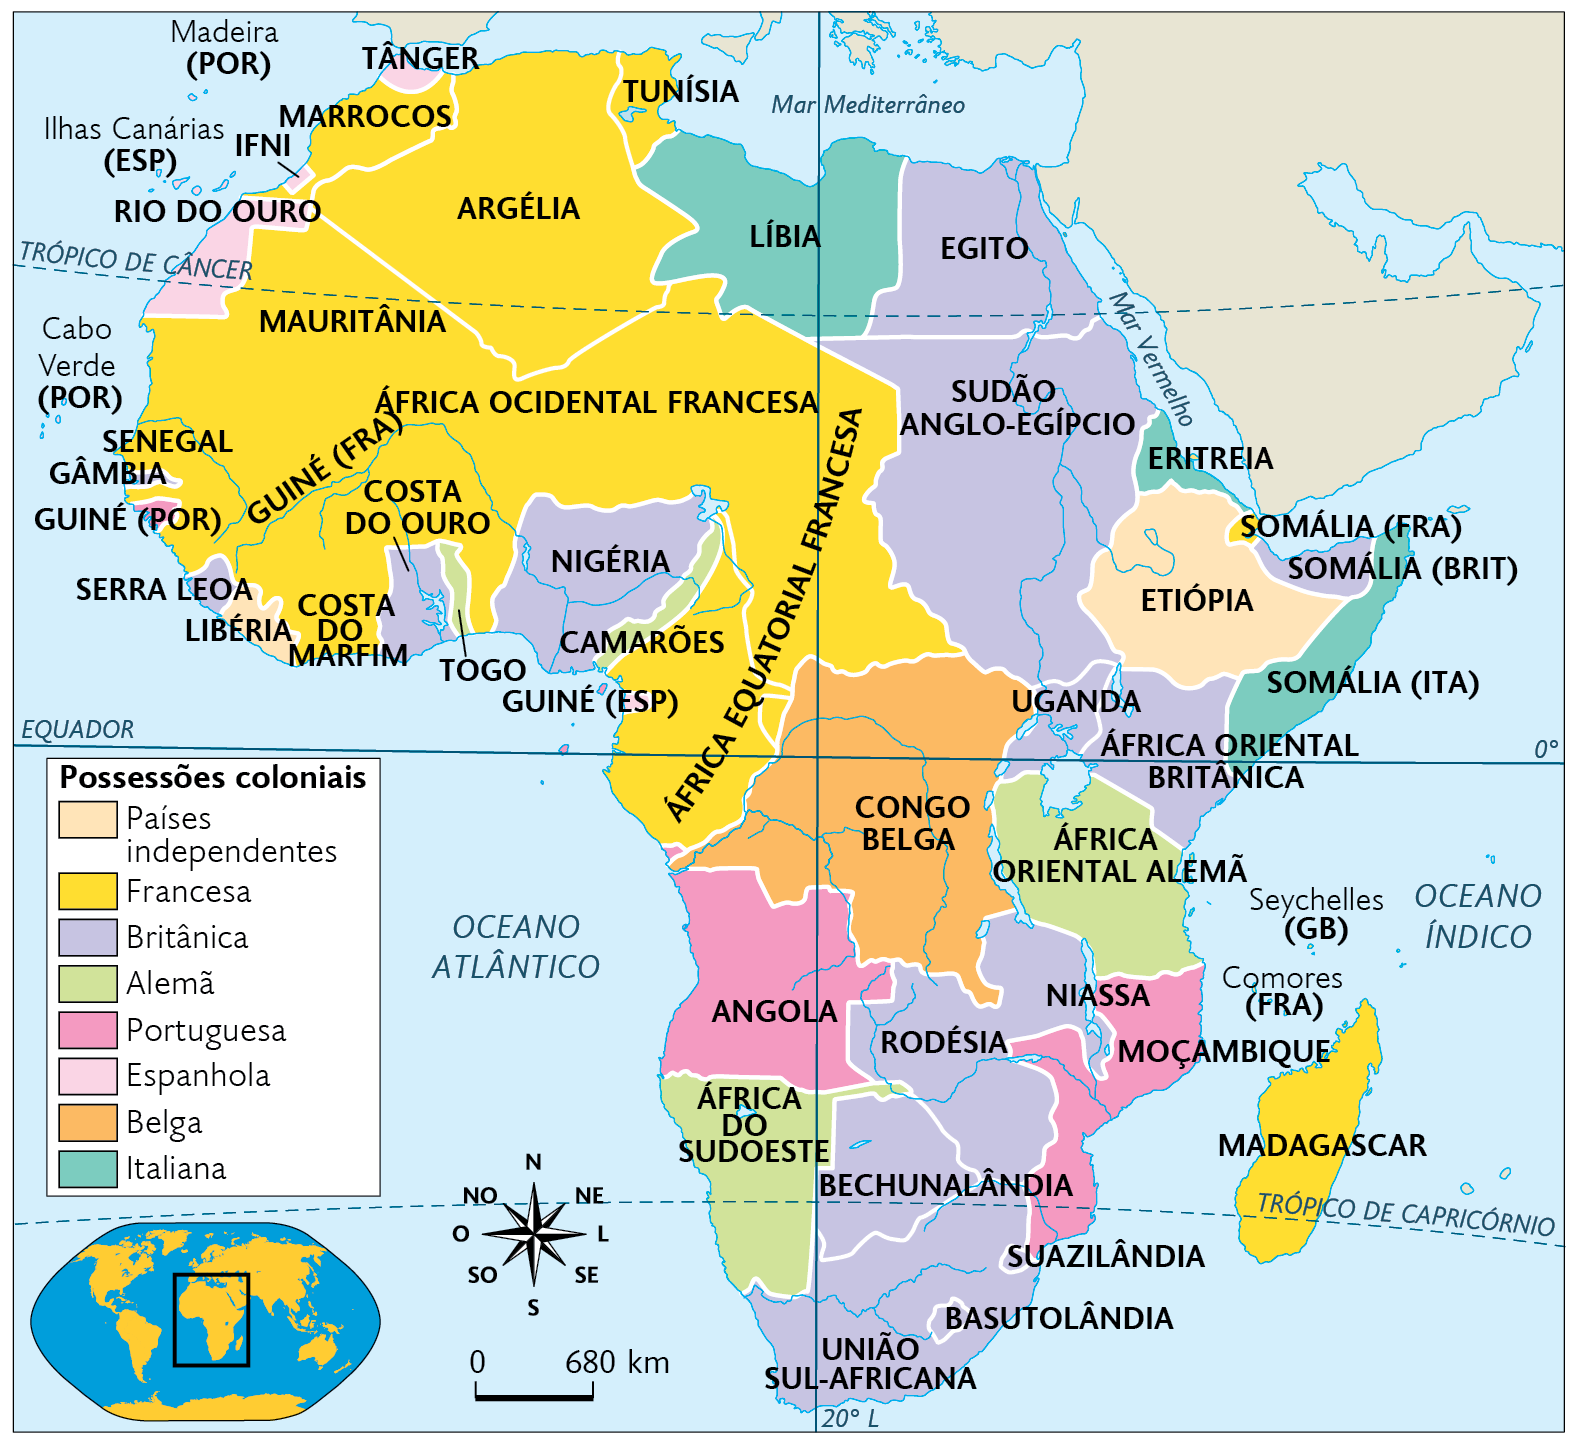 Mapa. A divisão da África de acordo com a Conferência de Berlim (século 19). Mapa territorial destacado conforme legenda: Países independentes: ETIÓPIA e LIBÉRIA. Possessões coloniais Francesa: MARROCOS, ARGÉLIA, TUNÍSIA, MAURITÂNIA, ÁFRICA OCIDENTAL FRANCESA, SENEGAL, COSTA DO MARFIM, ÁFRICA EQUATORIAL FRANCESA, GUINÉ (FRANÇA), SOMÁLIA (FRANÇA), COMORES e MADAGASCAR. Possessões coloniais Britânica: GÂMBIA, SERRA LEOA, COSTA DO OURO, NIGÉRIA, EGITO, SUDÃO ANGLO-EGÍPCIO, SOMÁLIA (BRITÂNICA), UGANDA, ÁFRICA ORIENTAL BRITÂNICA, NIASSA, RODÉSIA, BECHUNALÂNDIA, SUAZILÂNDIA, BASUTOLÂNDIA, SEYCHELLES e UNIÃO SUL-AFRICANA. Possessões coloniais Alemã: TOGO, CAMARÕES, ÁFRICA ORIENTAL ALEMÃ e ÁFRICA DO SUDOESTE. Possessões coloniais Portuguesa: MADEIRA, CABO VERDE, ANGOLA, MOÇAMBIQUE e GUINÉ (PORTUGAL). Possessões coloniais Espanhola: ILHAS CANÁRIAS, TÂNGER e RIO DO OURO. Possessões coloniais Belga: CONGO BELGA. Possessões coloniais Italiana: LÍBIA, ERITREIA e SOMÁLIA (ITÁLIA). No canto inferior à esquerda, planisfério destacando a África e parte da Europa. Ao lado, rosa dos ventos e escala de 680 quilômetros por centímetro.